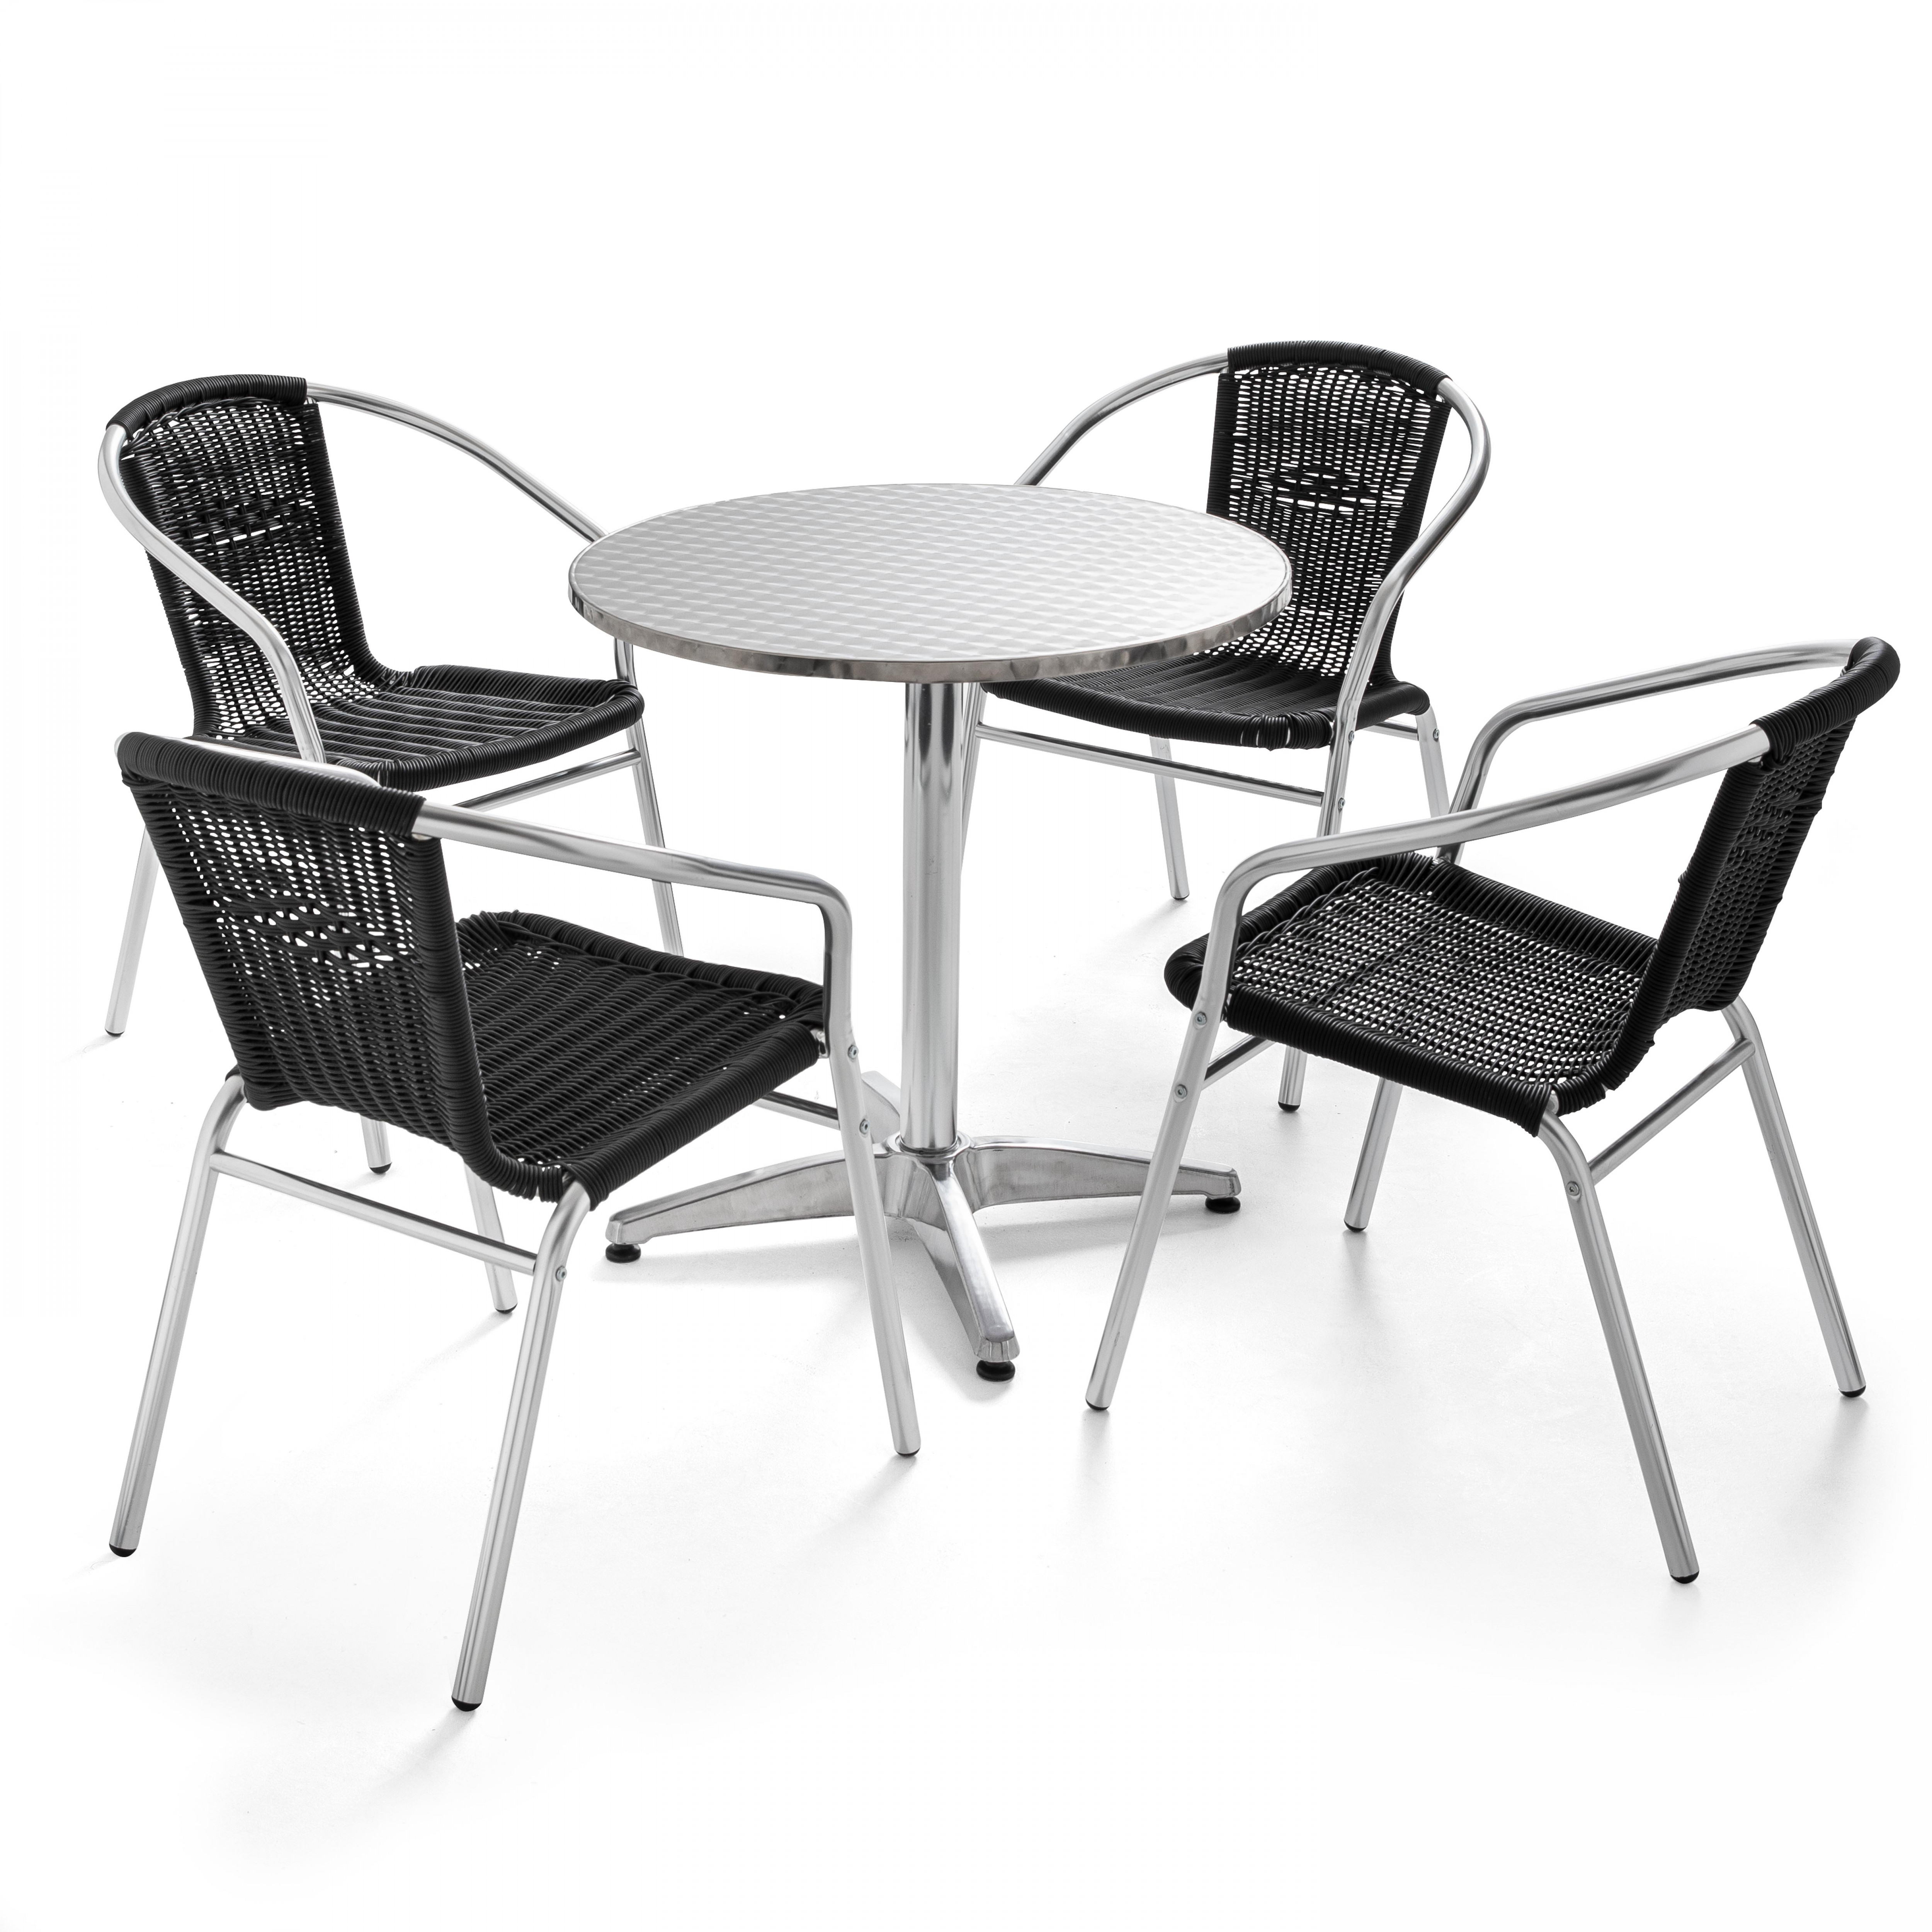 Table de jardin ronde et 4 chaises avec accoudoirs en aluminium et résine